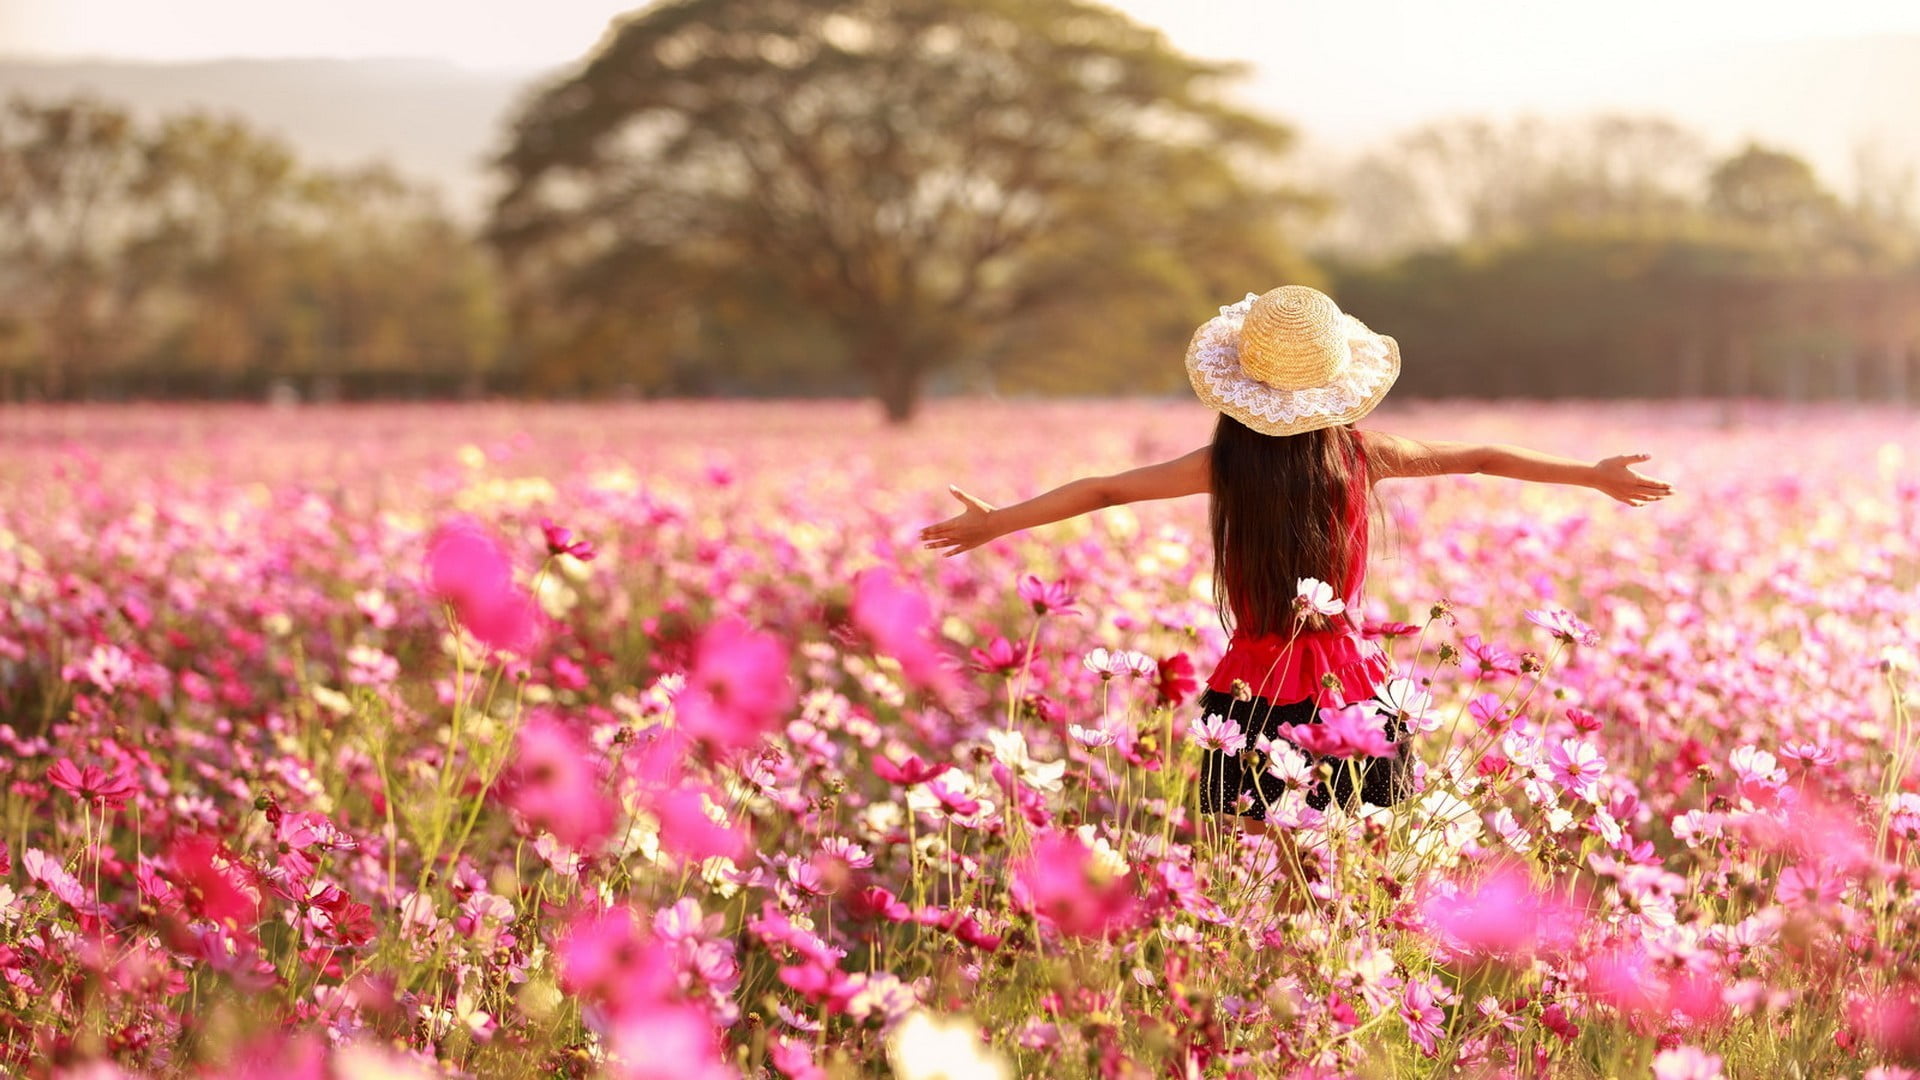 landscape, women, women outdoors, flowers, field, hat, Cosmos (flower)